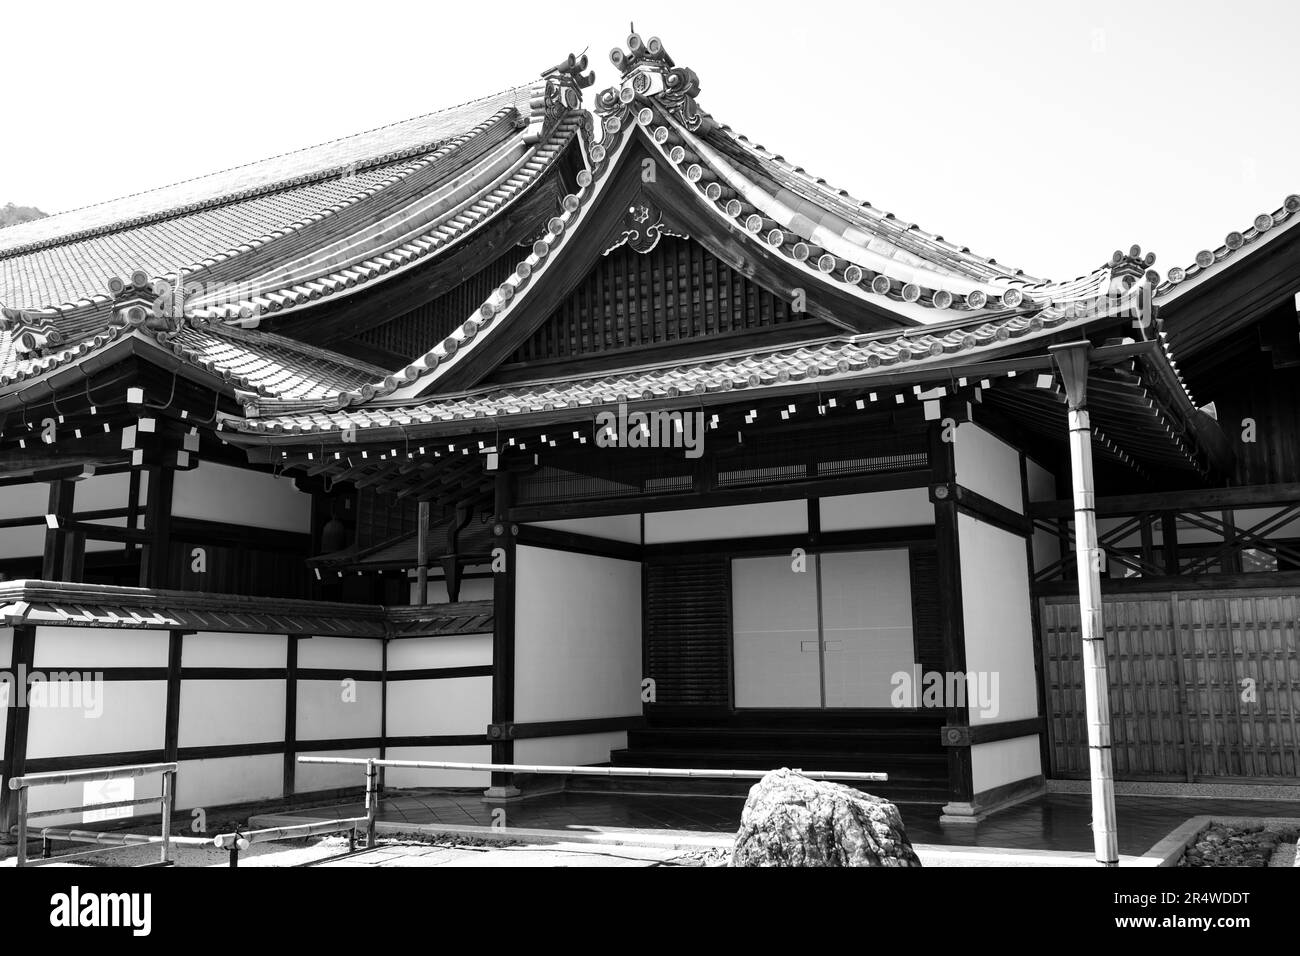 7. März 2023, Kyoto, Japan: Tenryu-ji-Tempel © é¾å¯å¤, ein buddhistischer Tempel. Kyoto (¬éƒ½) ist eine historische Großstadt Japans, reich an kulturellem Erbe und traditionellem Charme. Bekannt für seine berühmten Tempel, malerischen Gärten und historischen Wahrzeichen wie Kinkaku-ji und Fushimi Inari Taisha, bietet Kyoto einen Einblick in Japans Vergangenheit. Die lebhaften Festivals, die exquisite Küche und die ruhige Atmosphäre begeistern Besucher aus der ganzen Welt. Es ist ein geschäftiger Knotenpunkt für die japanische Tourismusbranche und beherbergt viele Unternehmen wie Nintendo. Japan hat eine rückläufige Bevölkerung und eine alternde Bevölkerung aufgrund Stockfoto